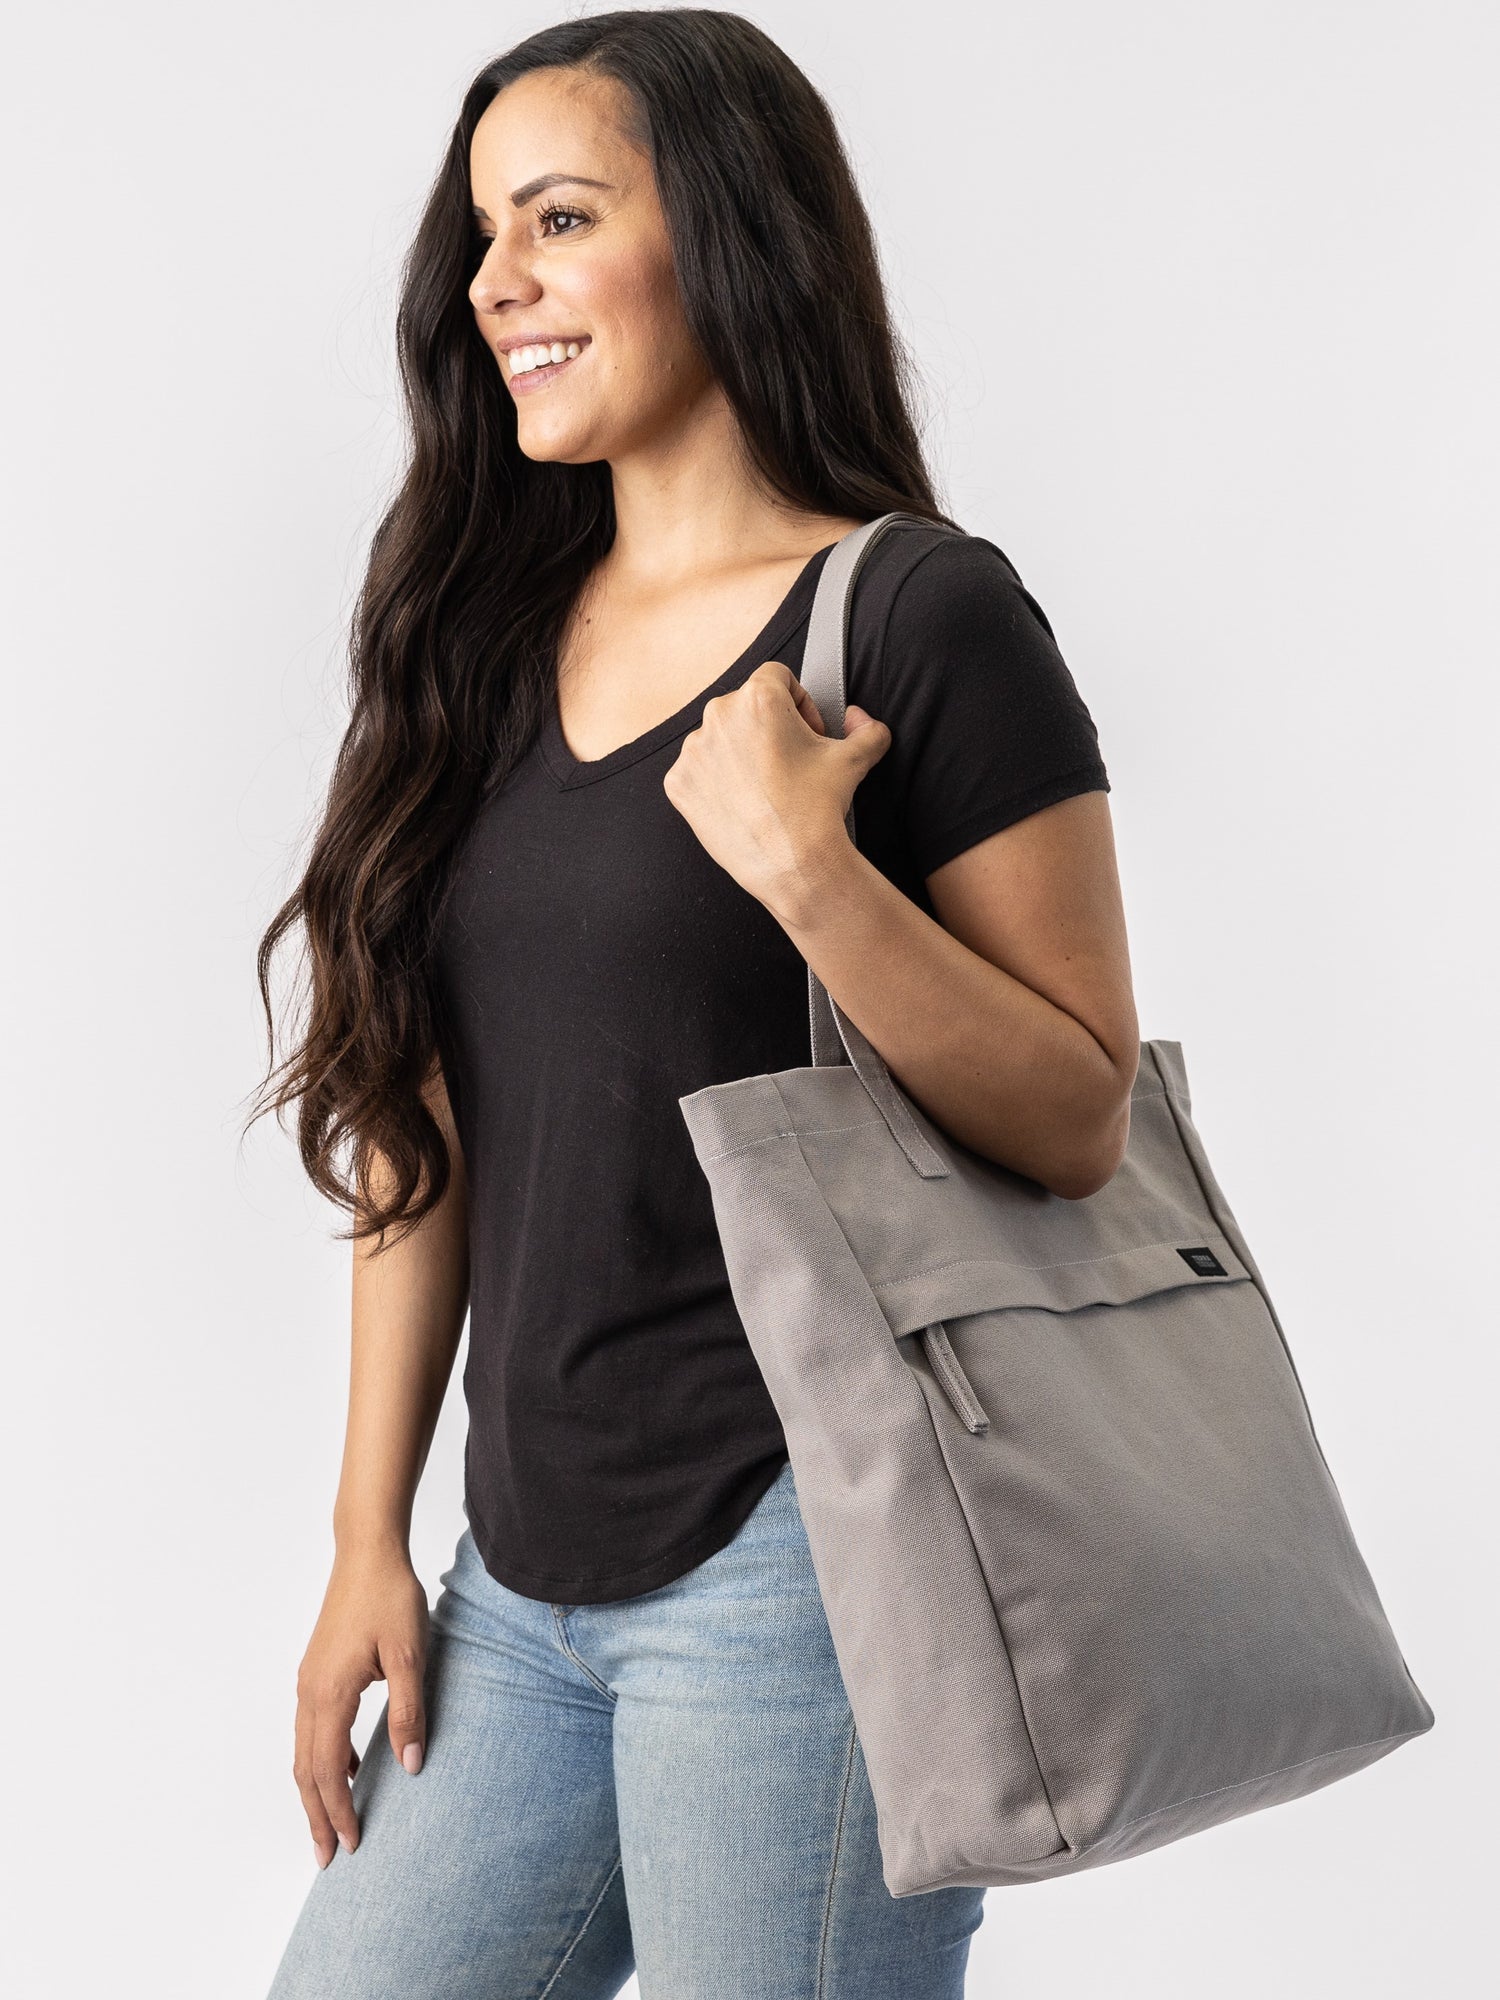 Shopping Medium Bag Canvas - Sand Brown/Black